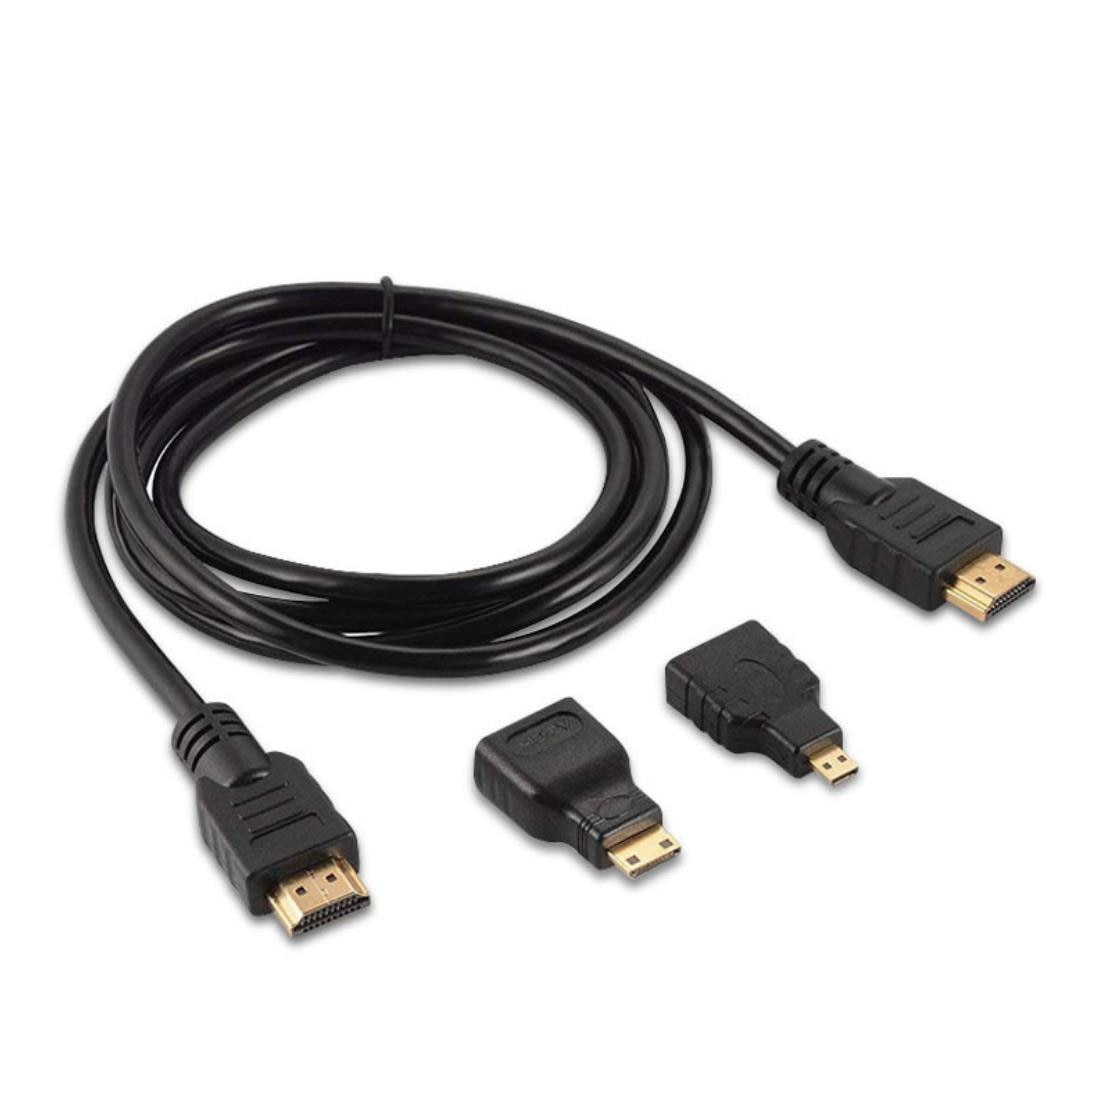 shortness of breath In the mercy of cheekbone Cablu HDMI 3 in 1 si convectori mini/micro HDMI, Parafasa, 1.5 m, Negru -  eMAG.ro